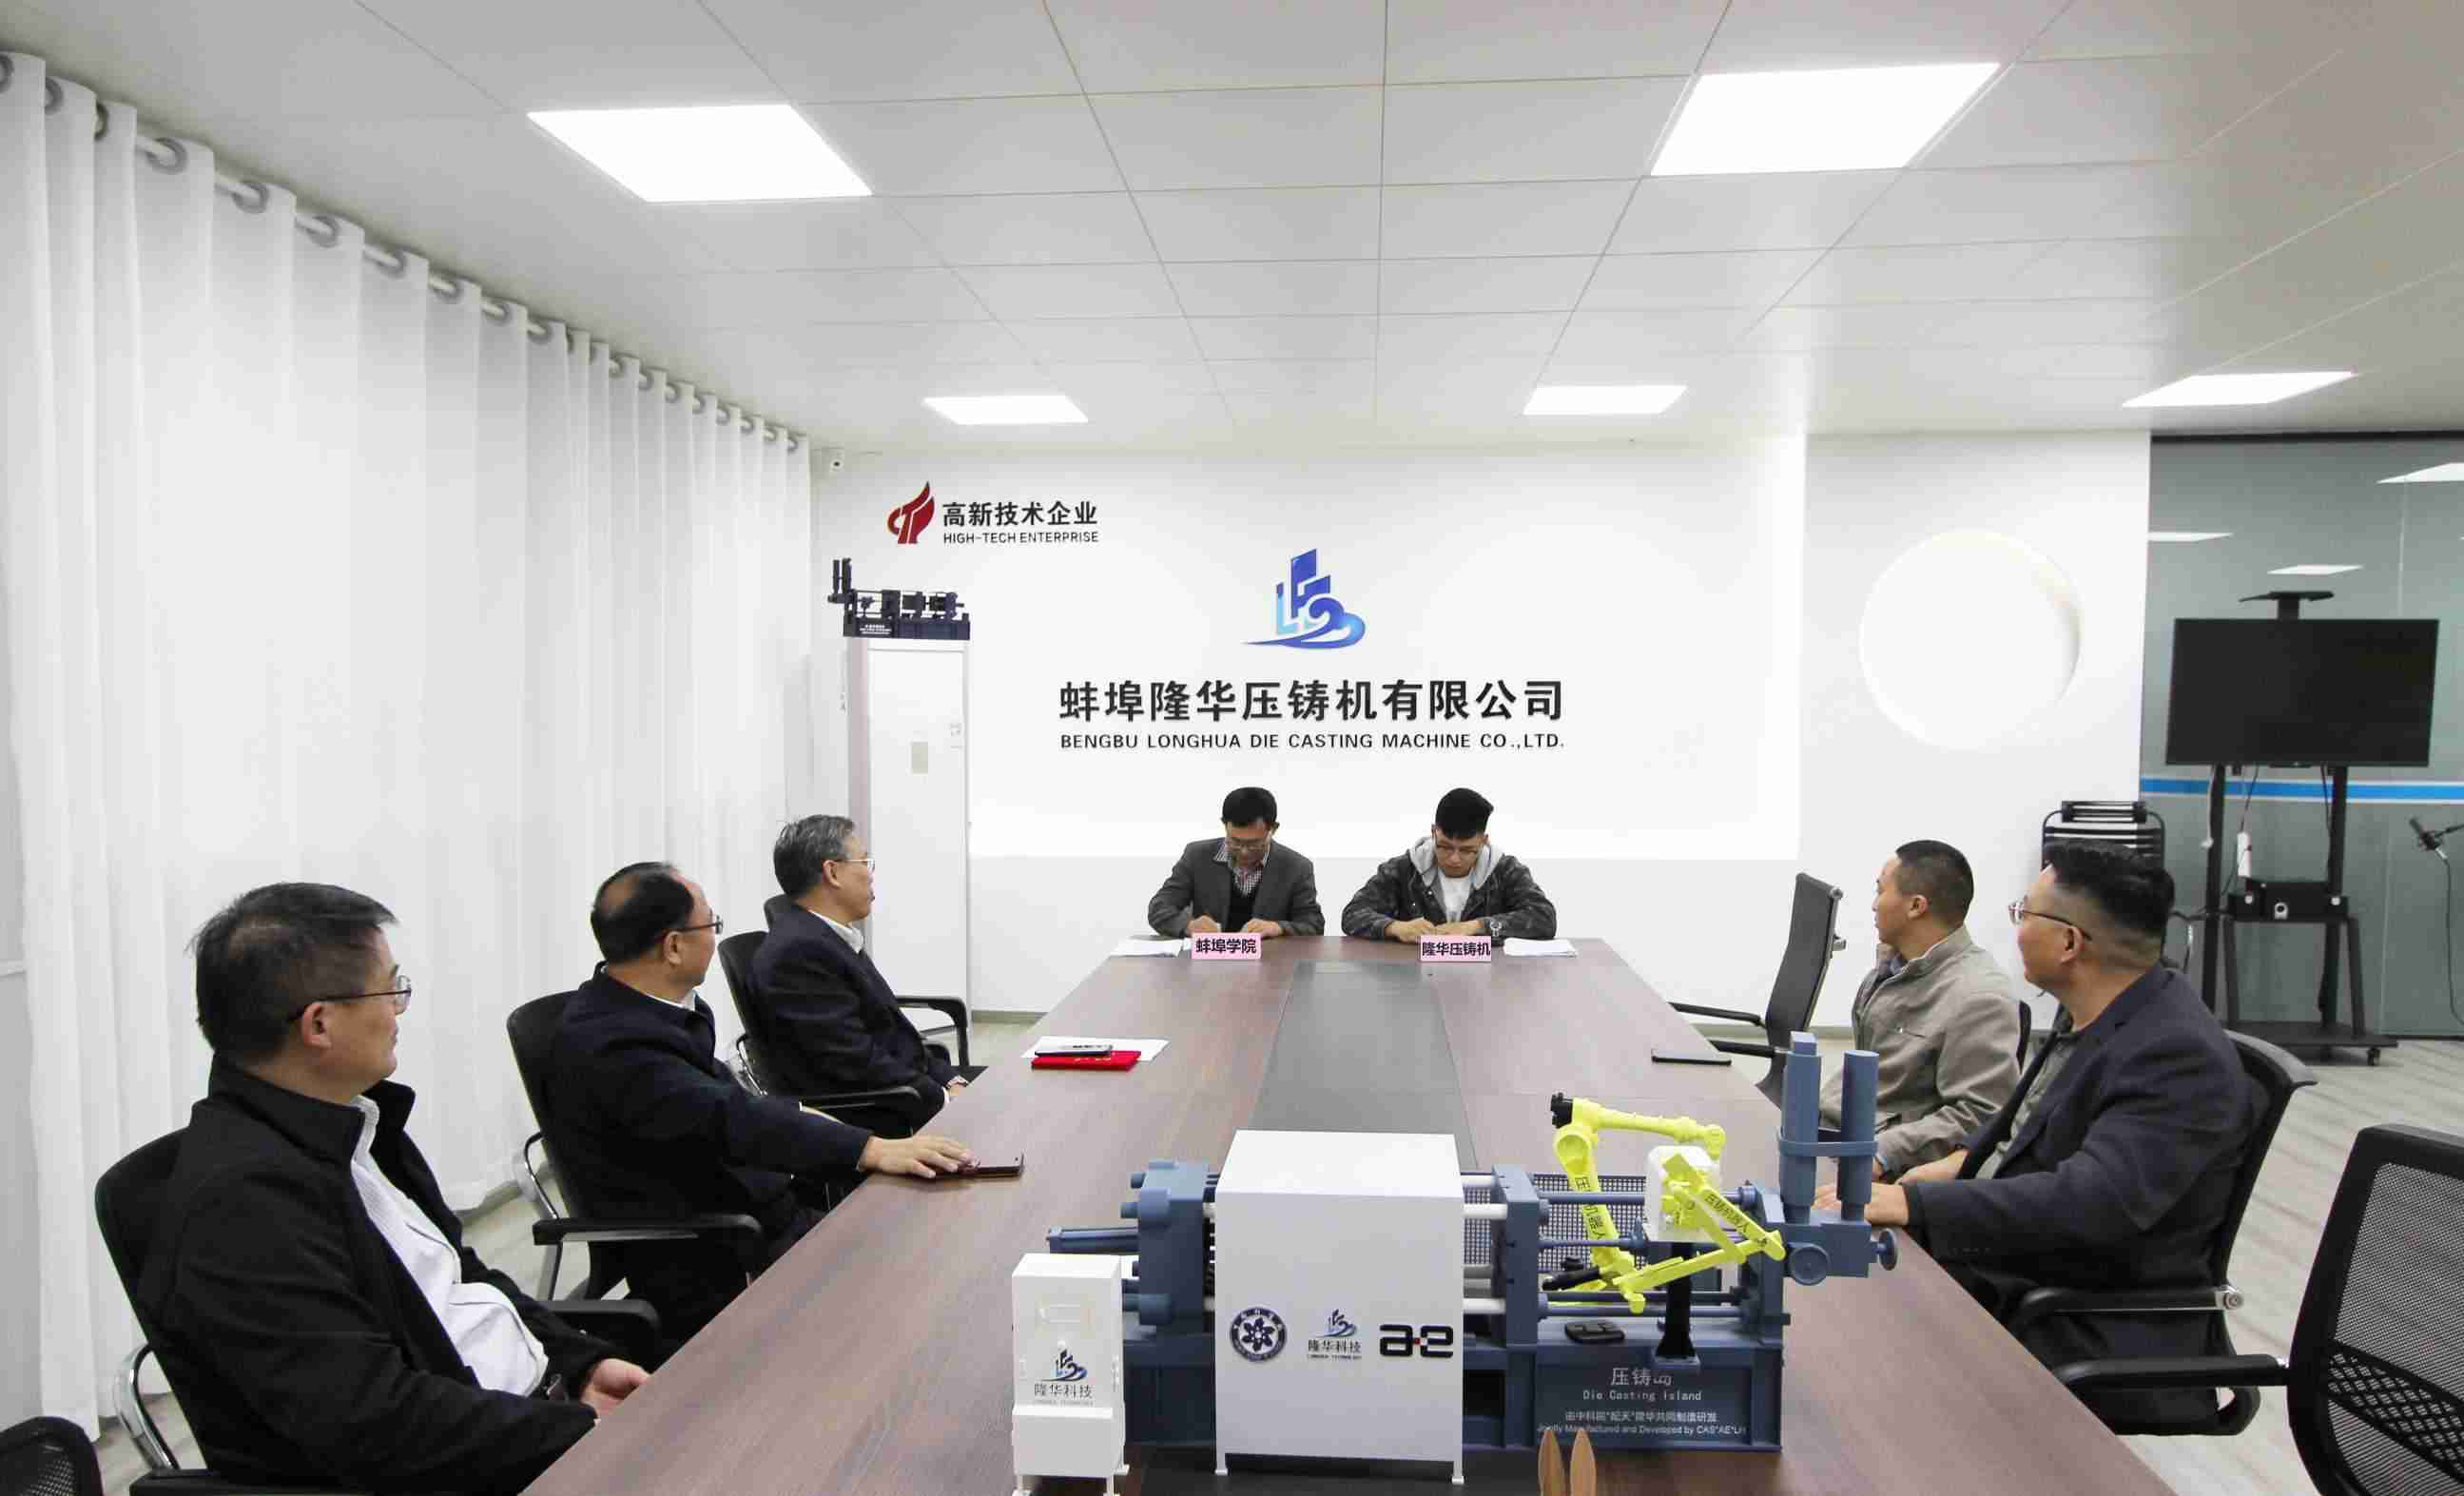 وقعت Bengbu Longhua و Bengbu College اتفاقية تعاون في مجال البحث والتطوير لـ 